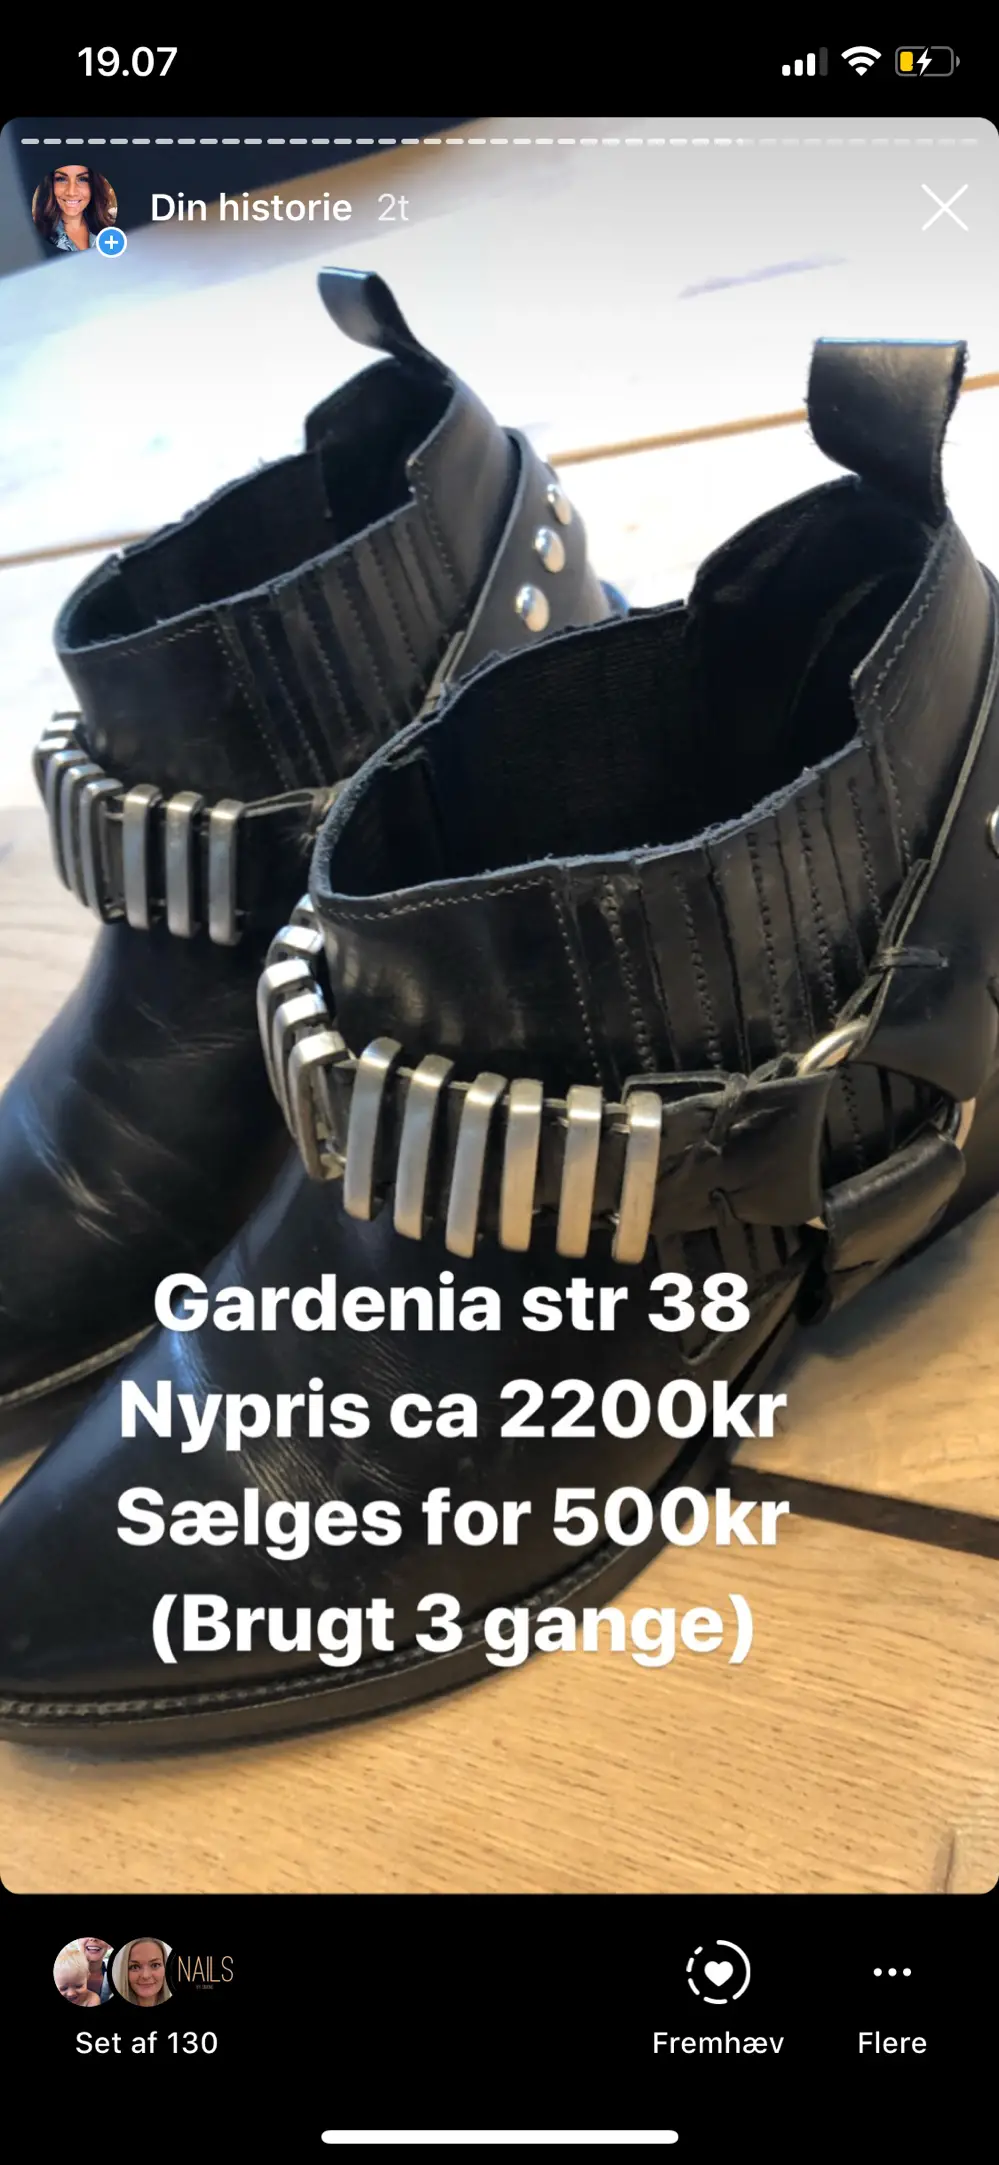 tank syndrom Insister Køb Gardenia Støvler i størrelse 38 af Jenni på Reshopper · Shop secondhand  til børn, mor og bolig